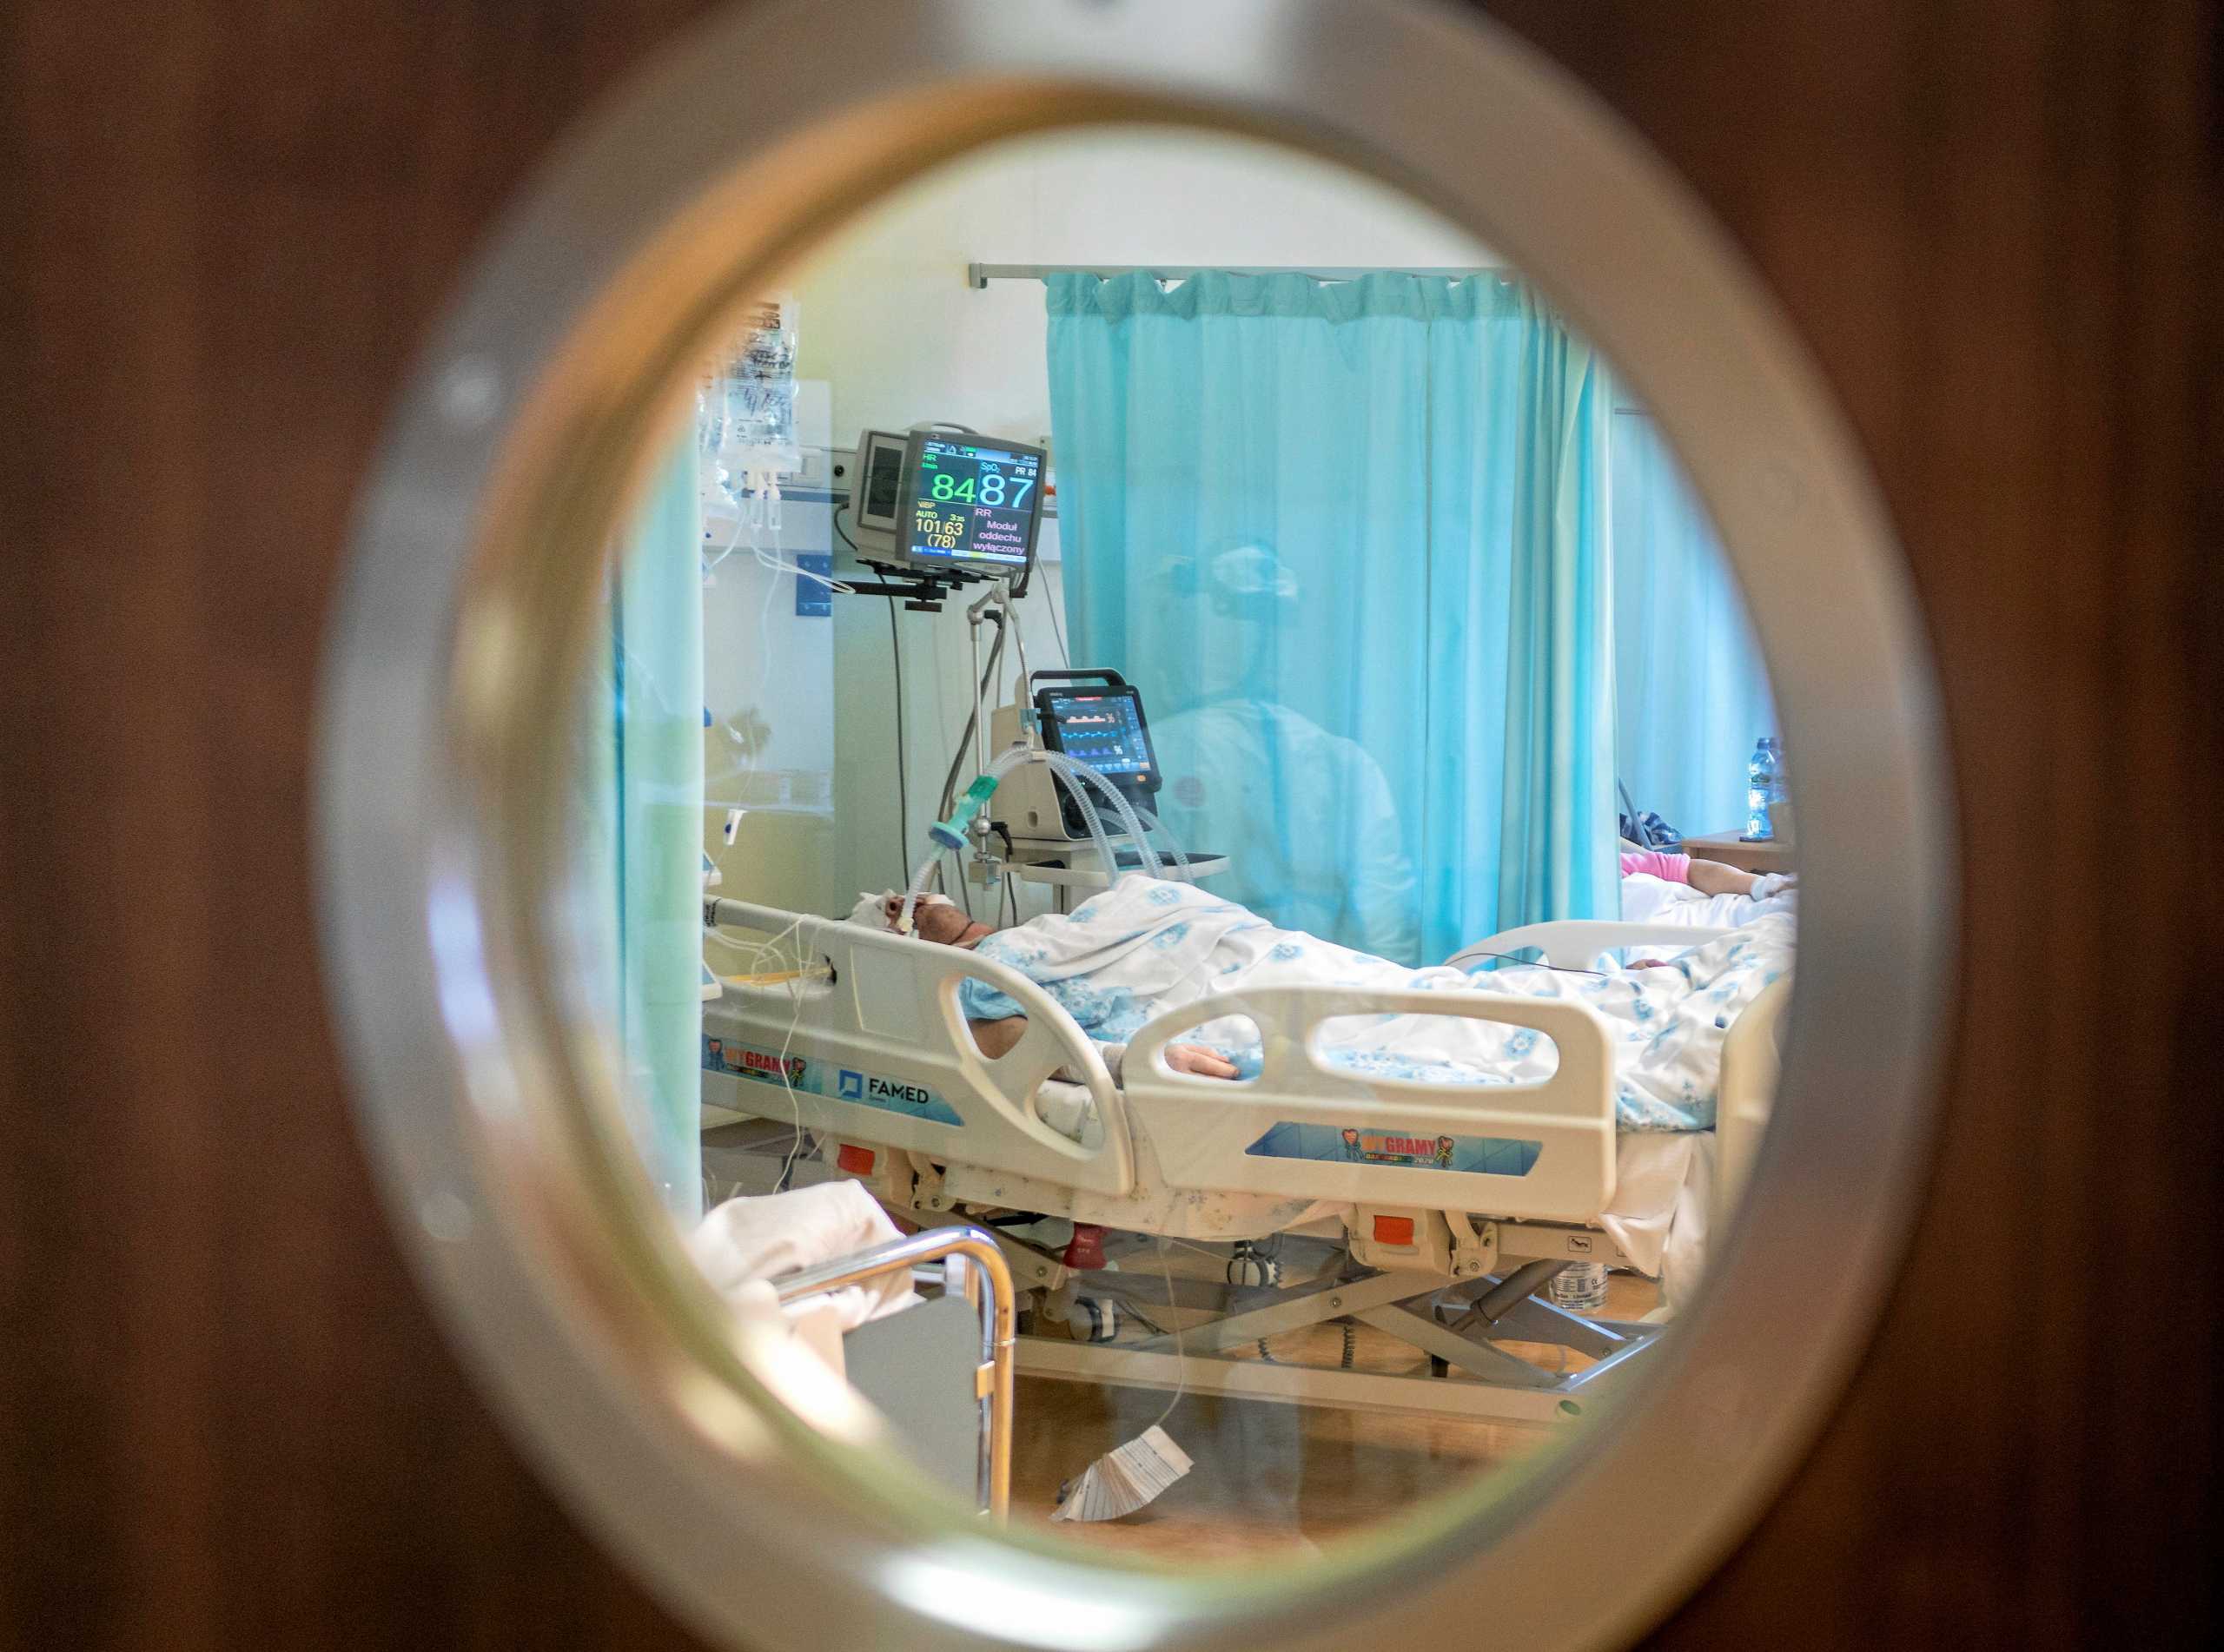 Κορονοϊός – Βόλος: Νόσησε βαριά αλλά παραμένει αμετανόητος αρνητής ακόμα και μέσα στο νοσοκομείο